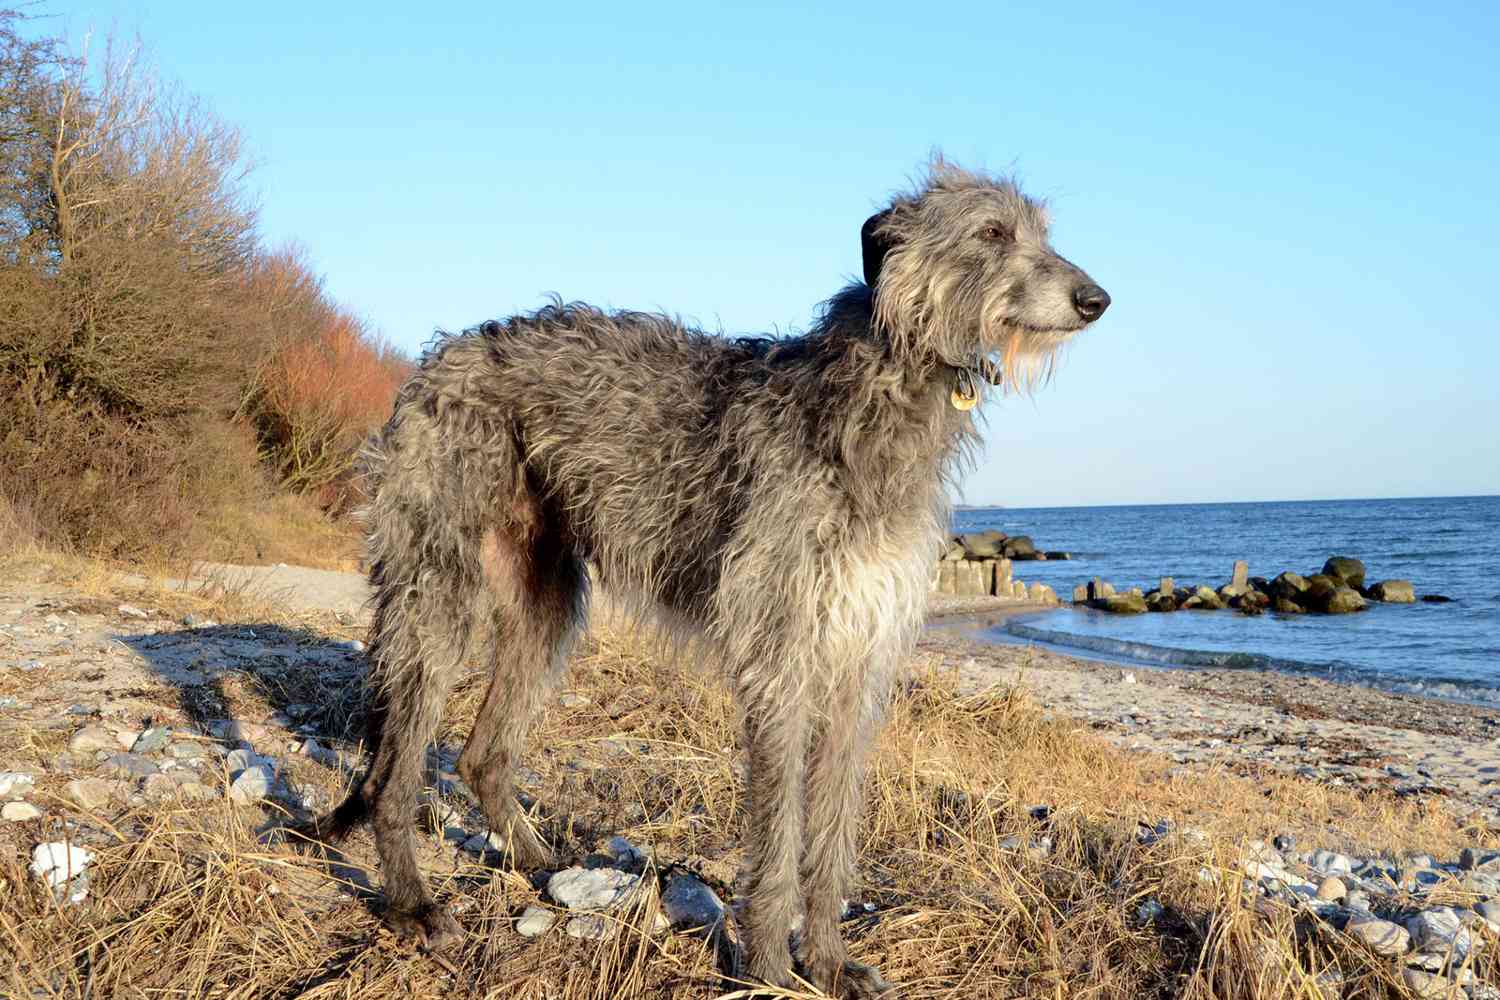 scottish deerhound dog standing on rocky beach